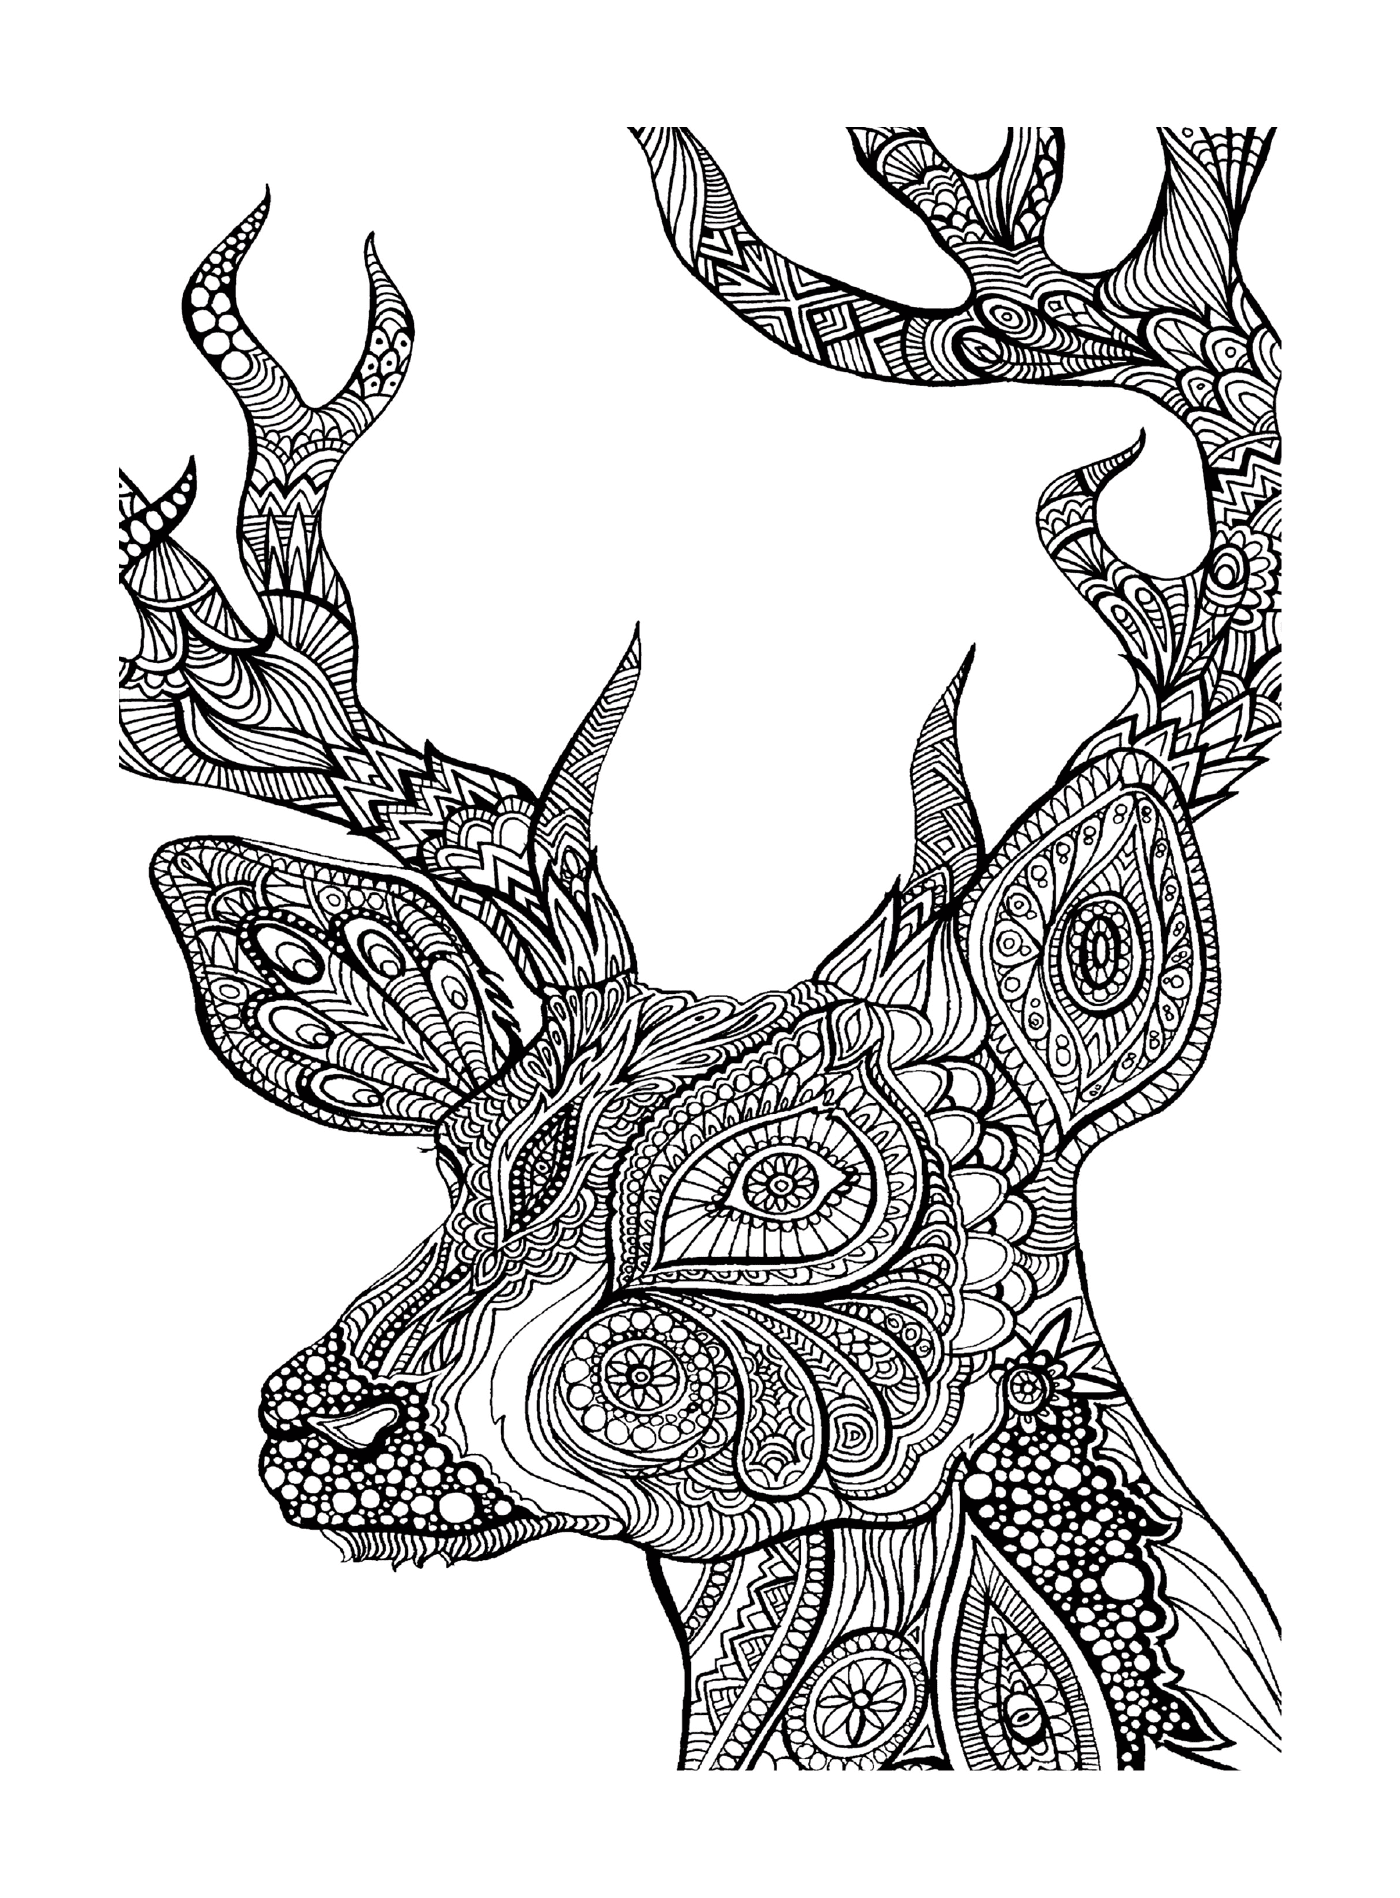  Der Kopf eines Hirsches 